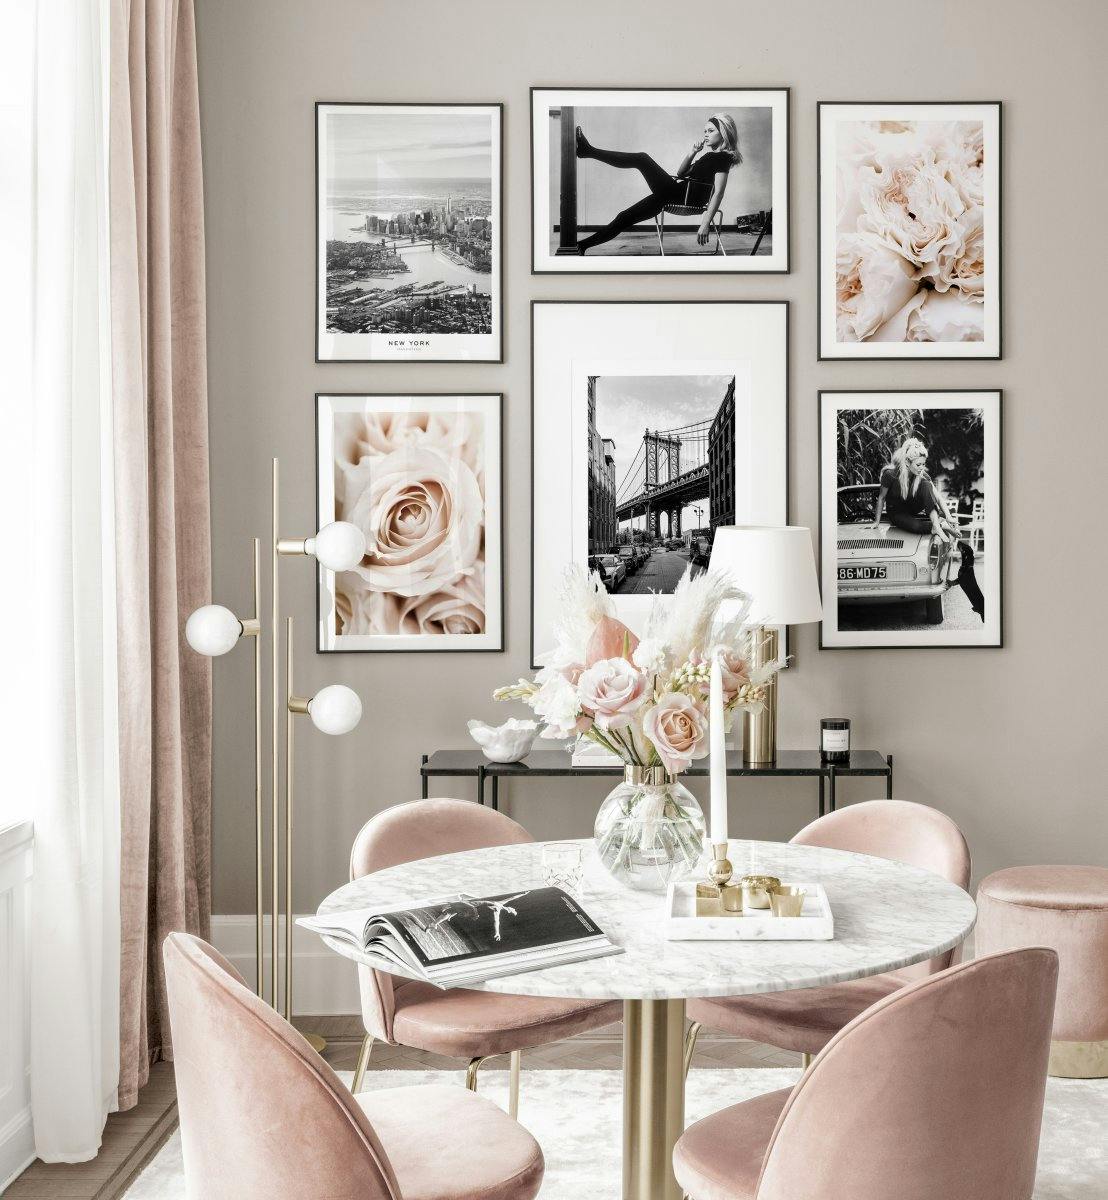 "Elegante mural de cuadros pósters vintage pósters de flores interior rosado marcos de metal negros "